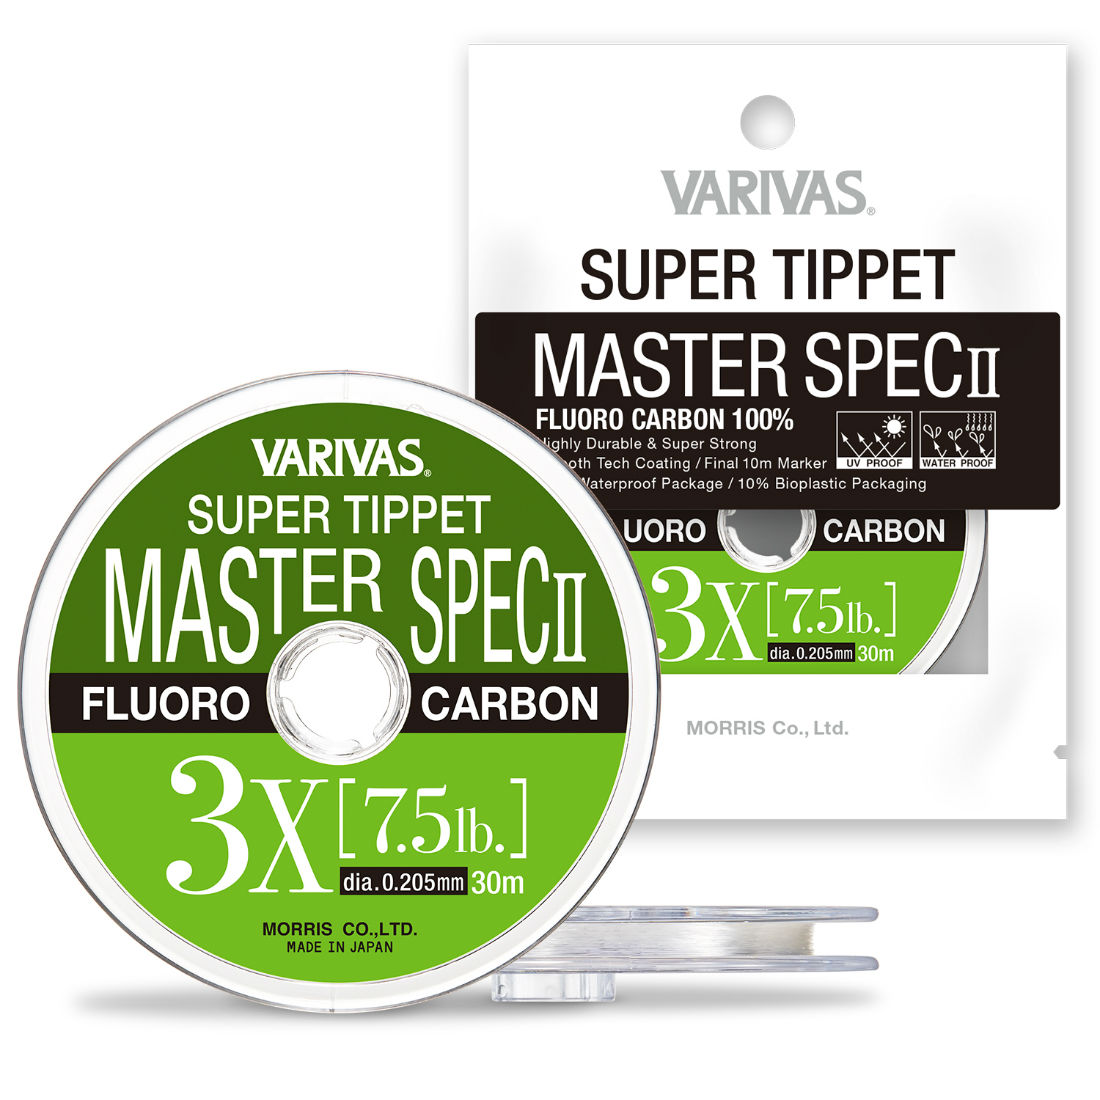 FIR SUPER TIPPET MASTER SPEC ll FLUORO 3X 30m 0.205mm 7.5lb